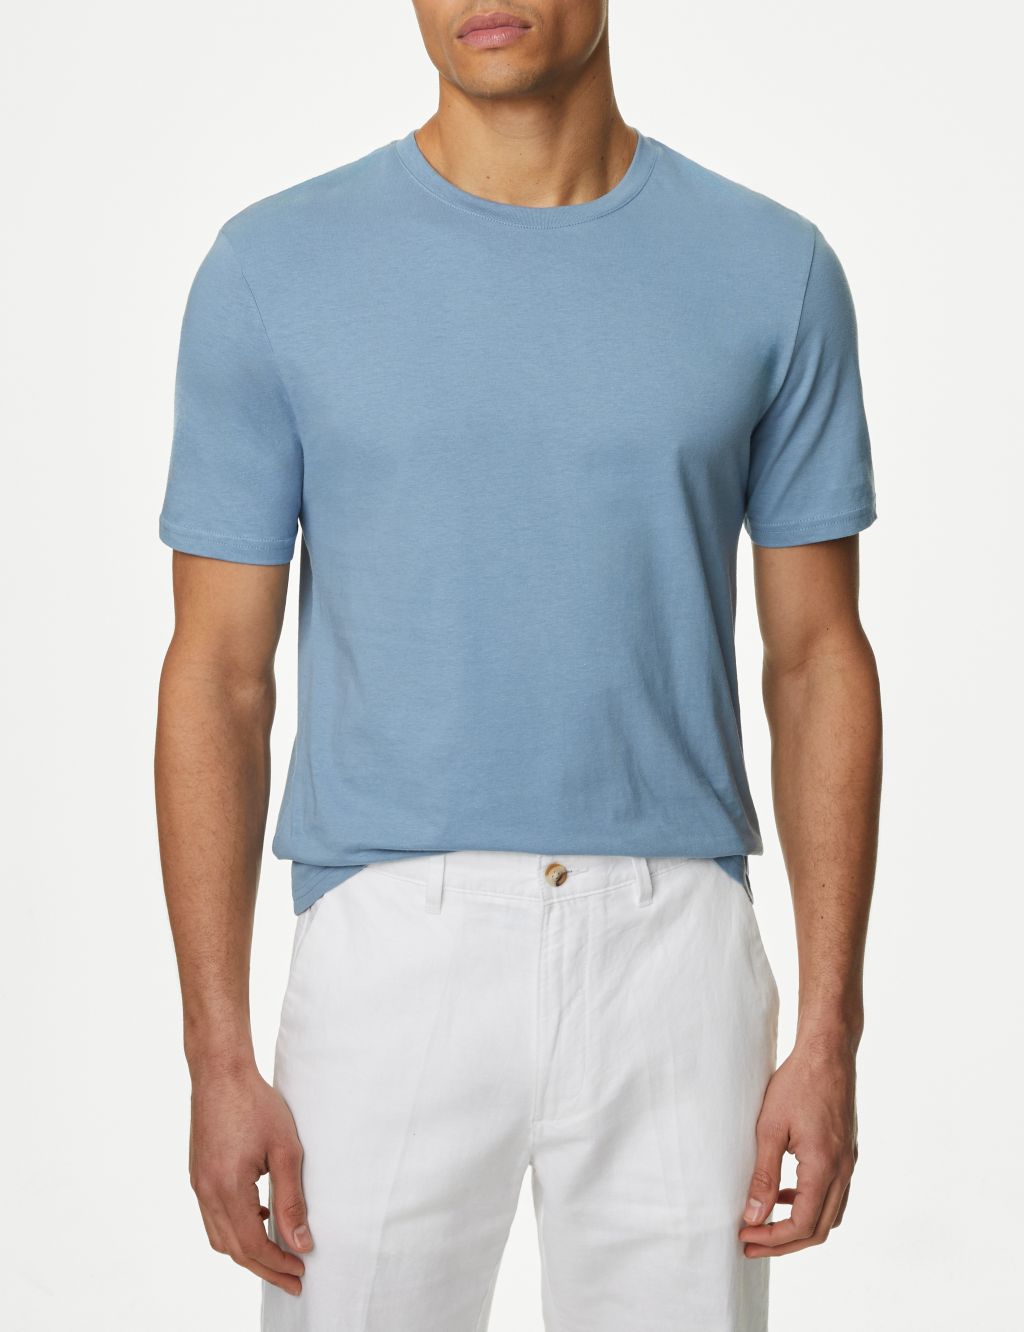 Slim Fit Pure Cotton Crew Neck T-Shirt image 4